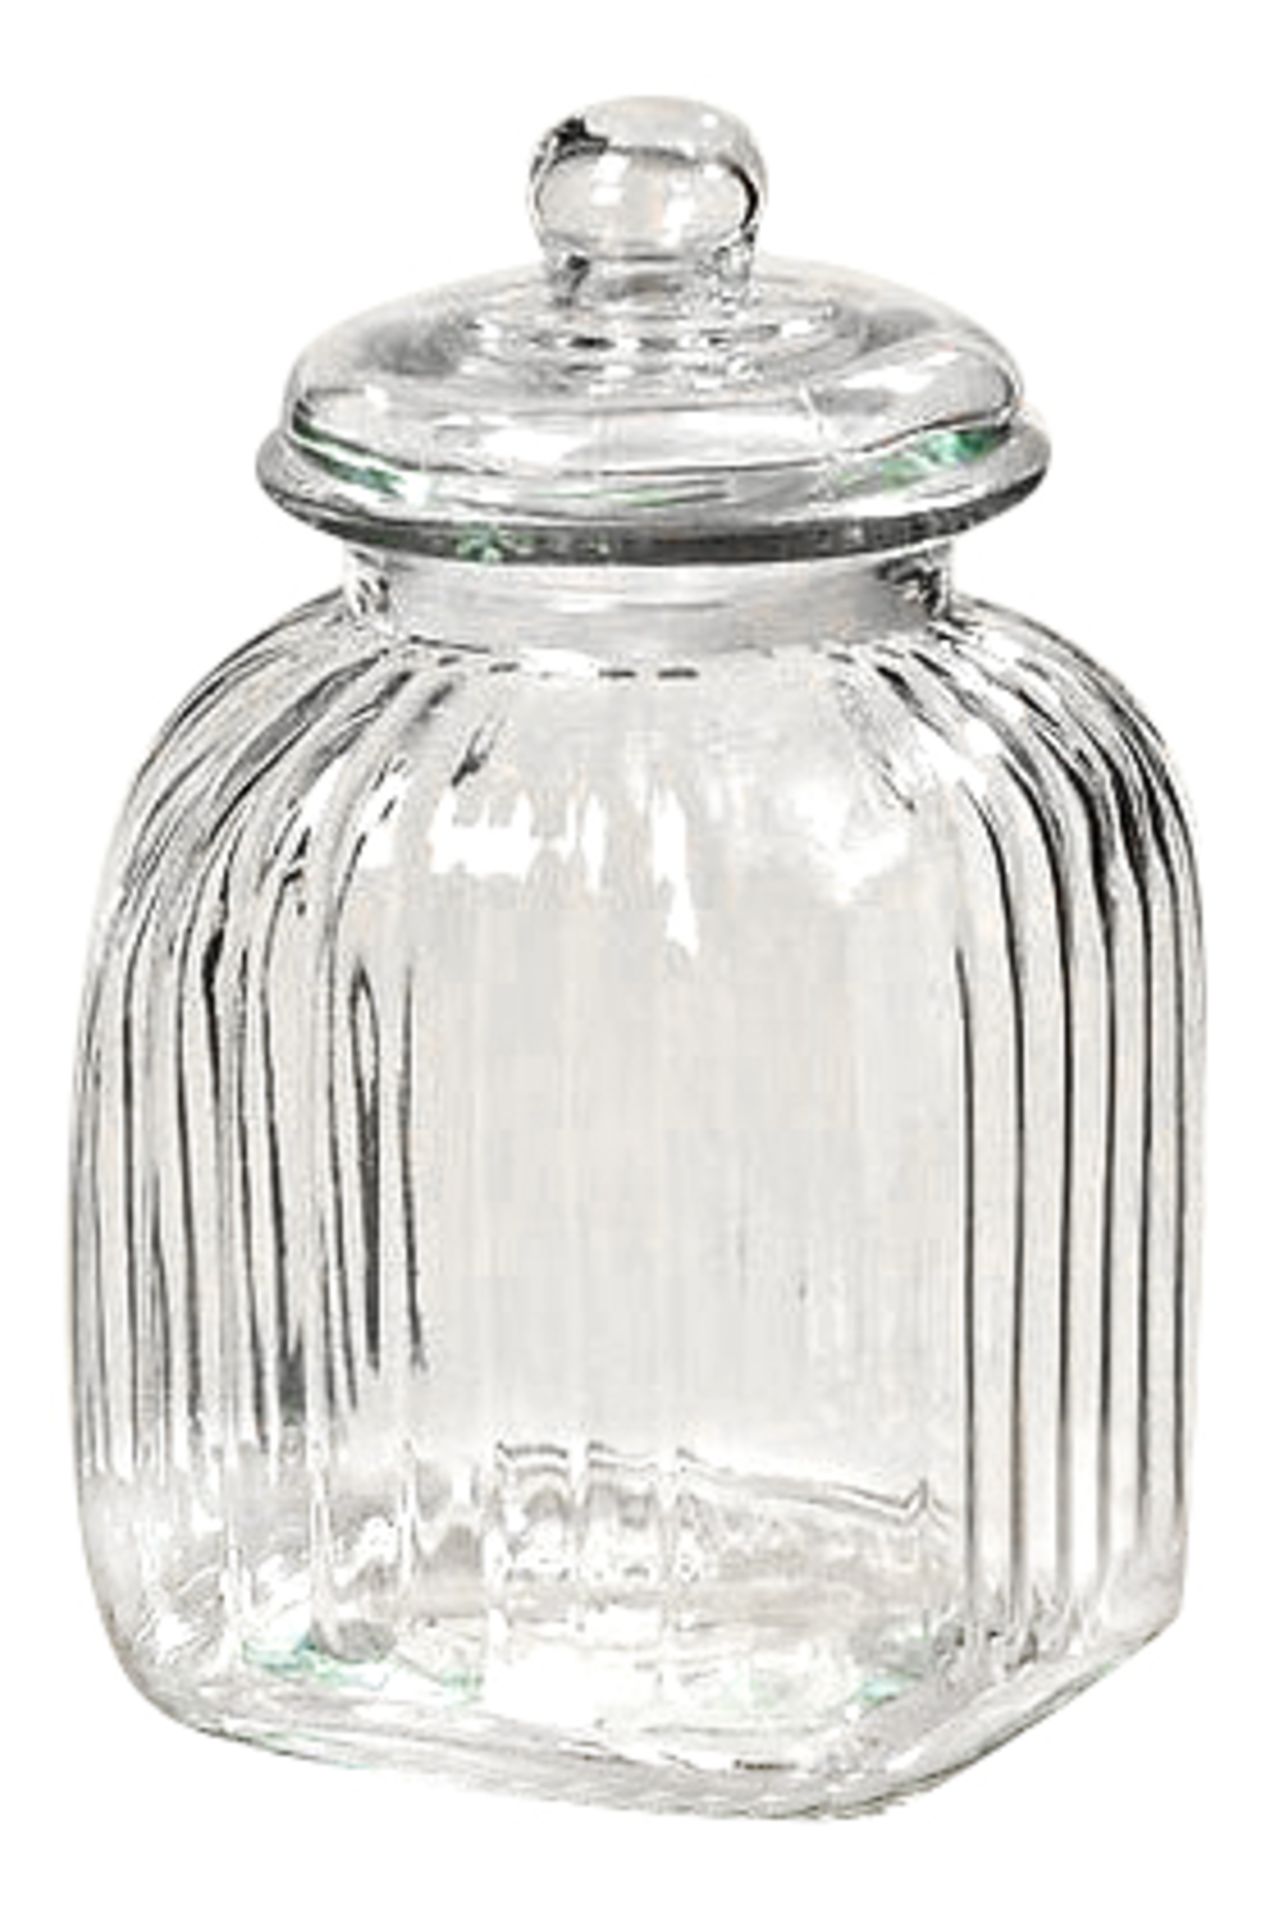 8 X GLASS SWEETIE JAR, SOAP DISH, ICE/BOTTLE BUCKET, GLASSWEAR, ETC. RRP £174.85 - Image 8 of 9